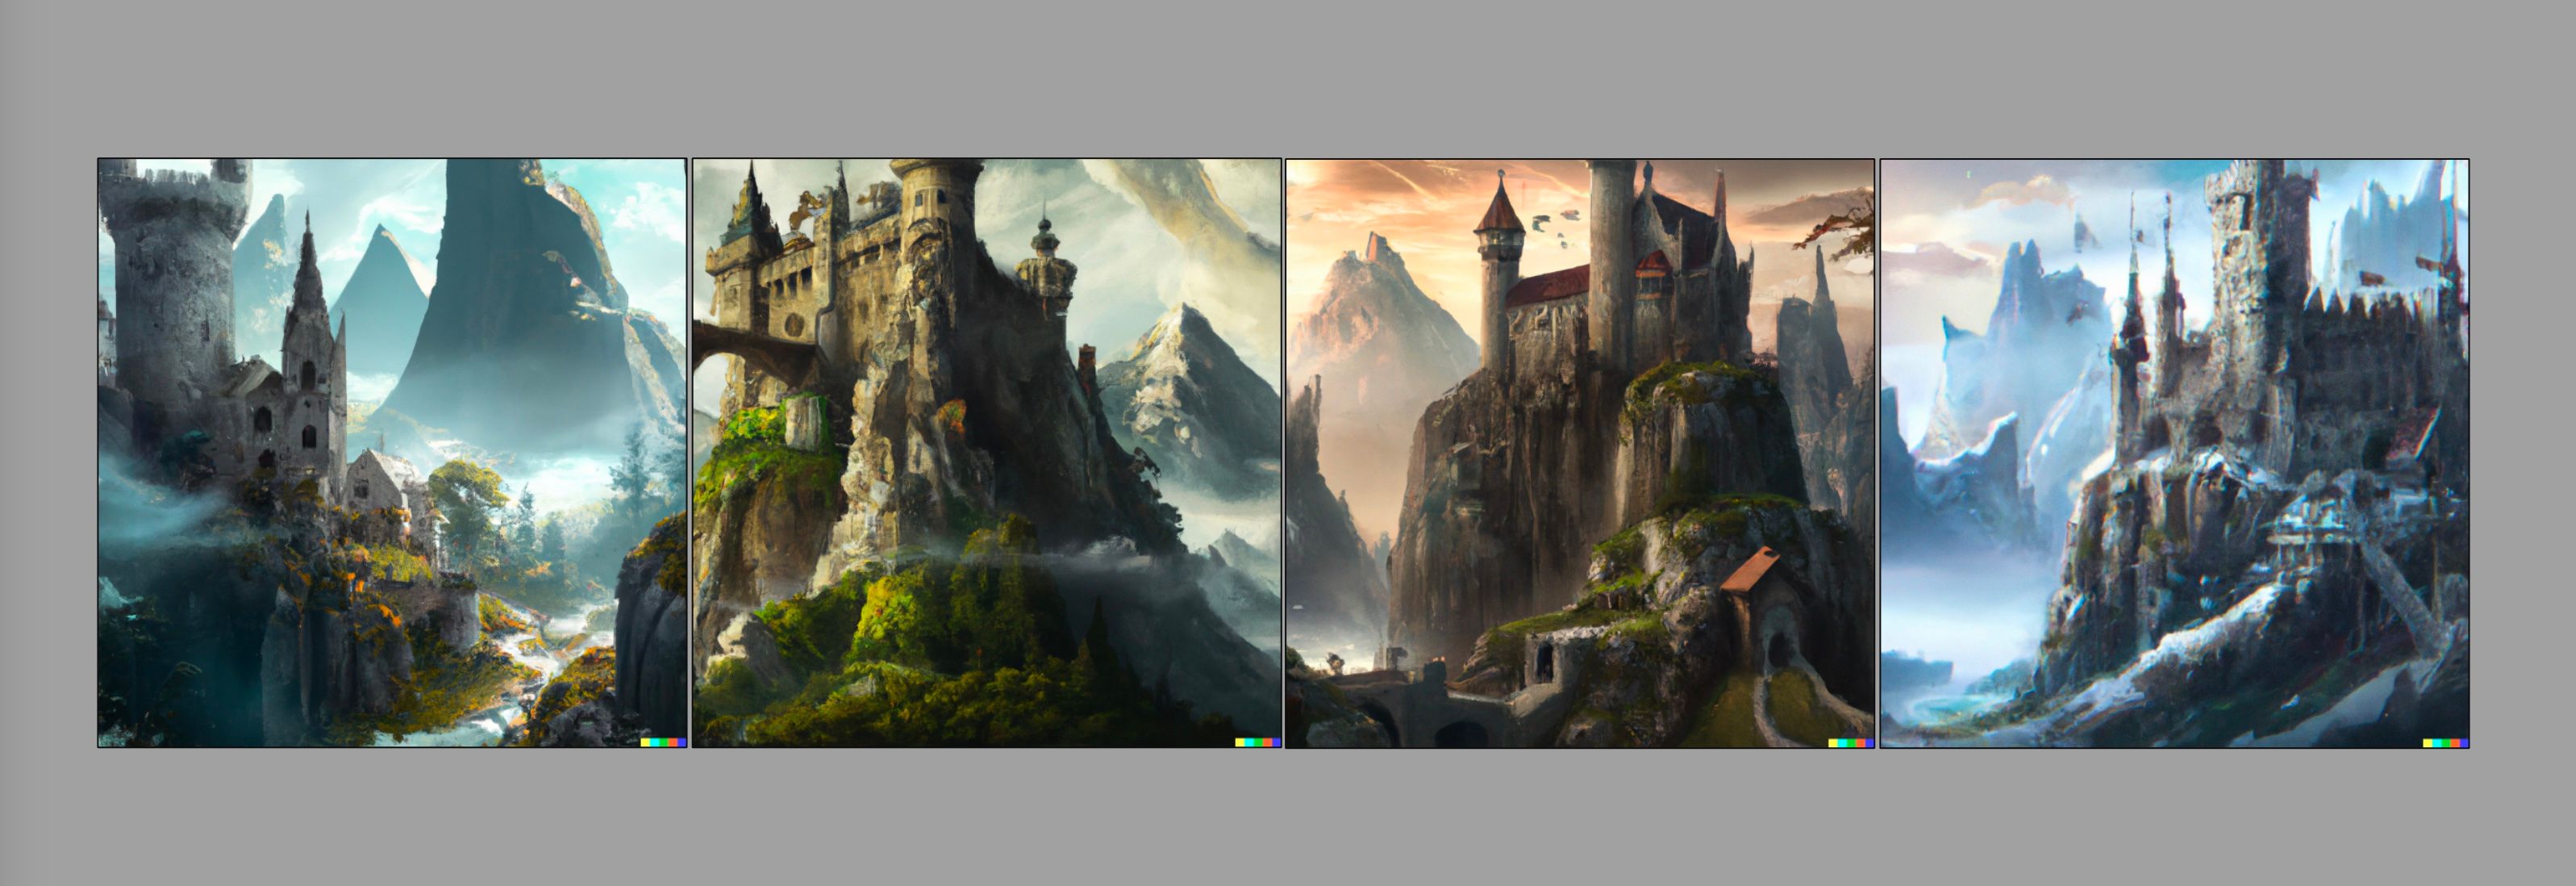 Quatre images d'un château médiéval avec des montagnes en arrière-plan, générées avec Dall-E